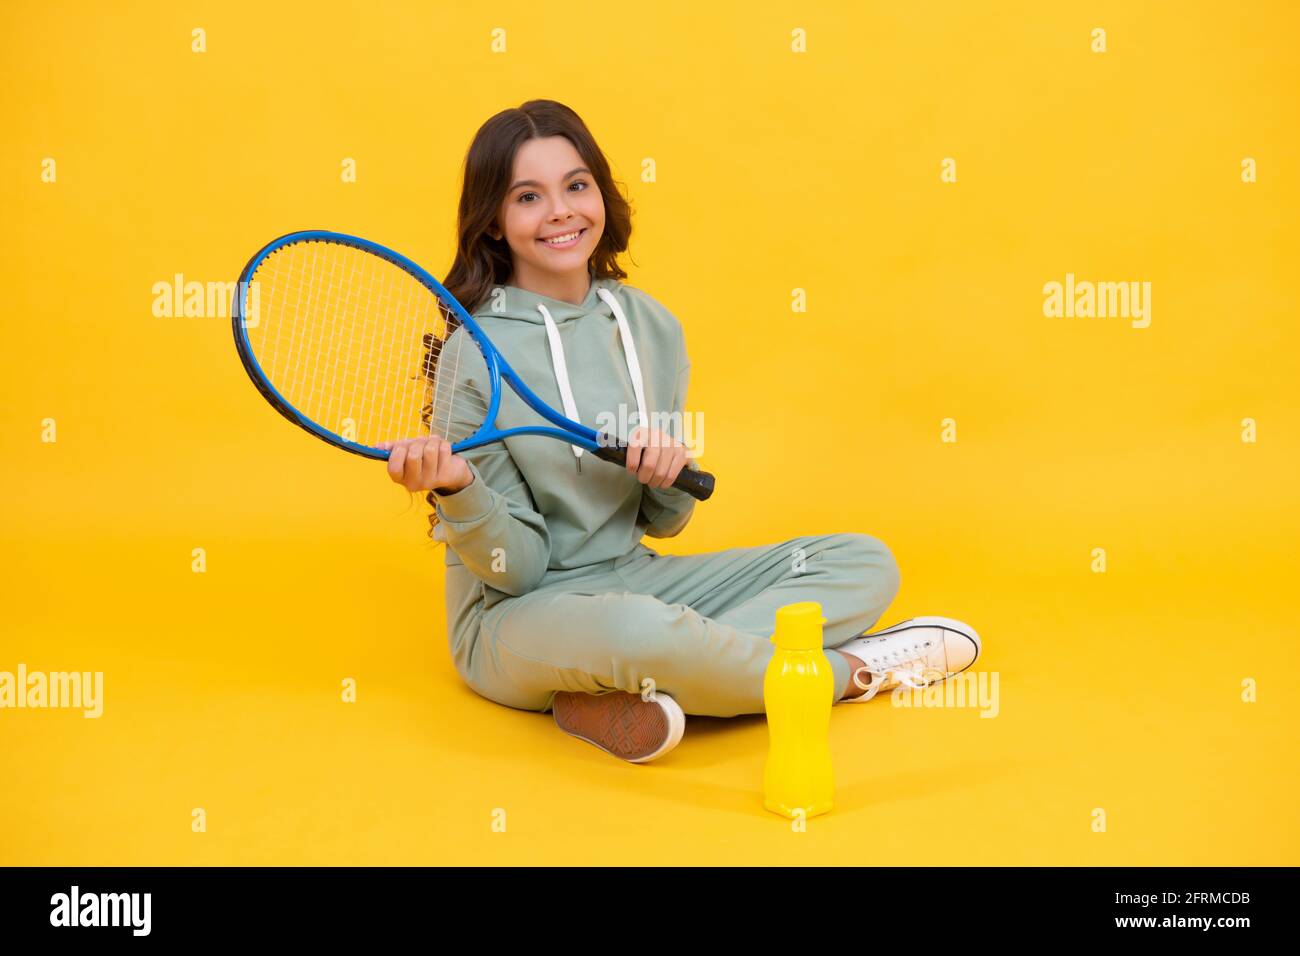 bambino seduto con racchetta e bottiglia d'acqua. bambino con racchetta da tennis. ragazza teen dopo l'allenamento sportivo. Foto Stock